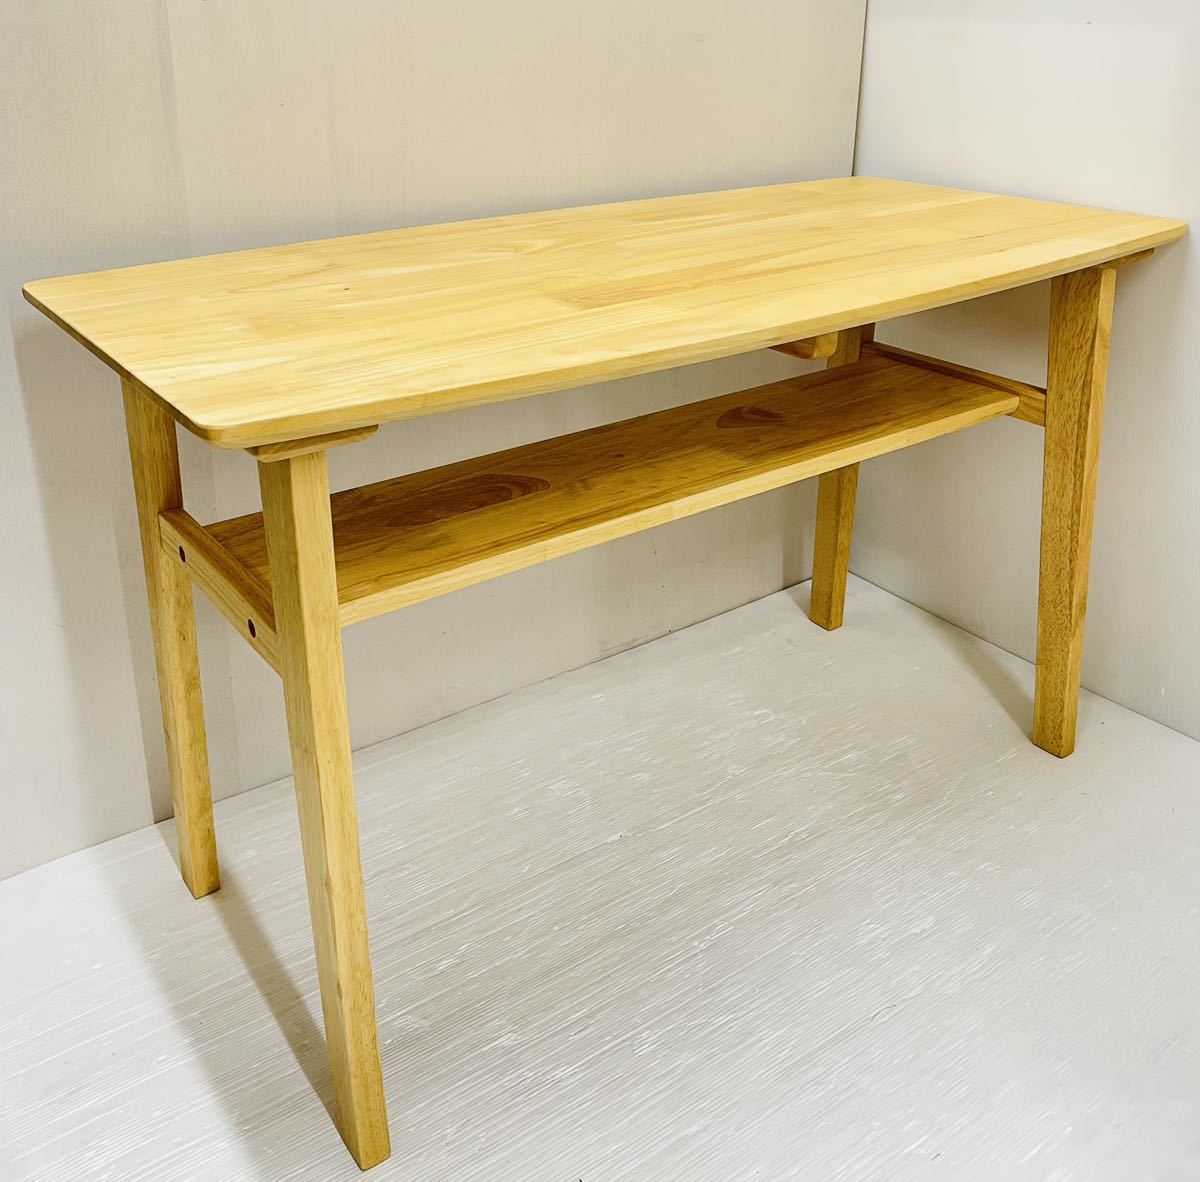 ◯大川家具 サプリ センターテーブル 1000◯ 無垢材 テーブル 高級家具 天然木 北欧スタイル